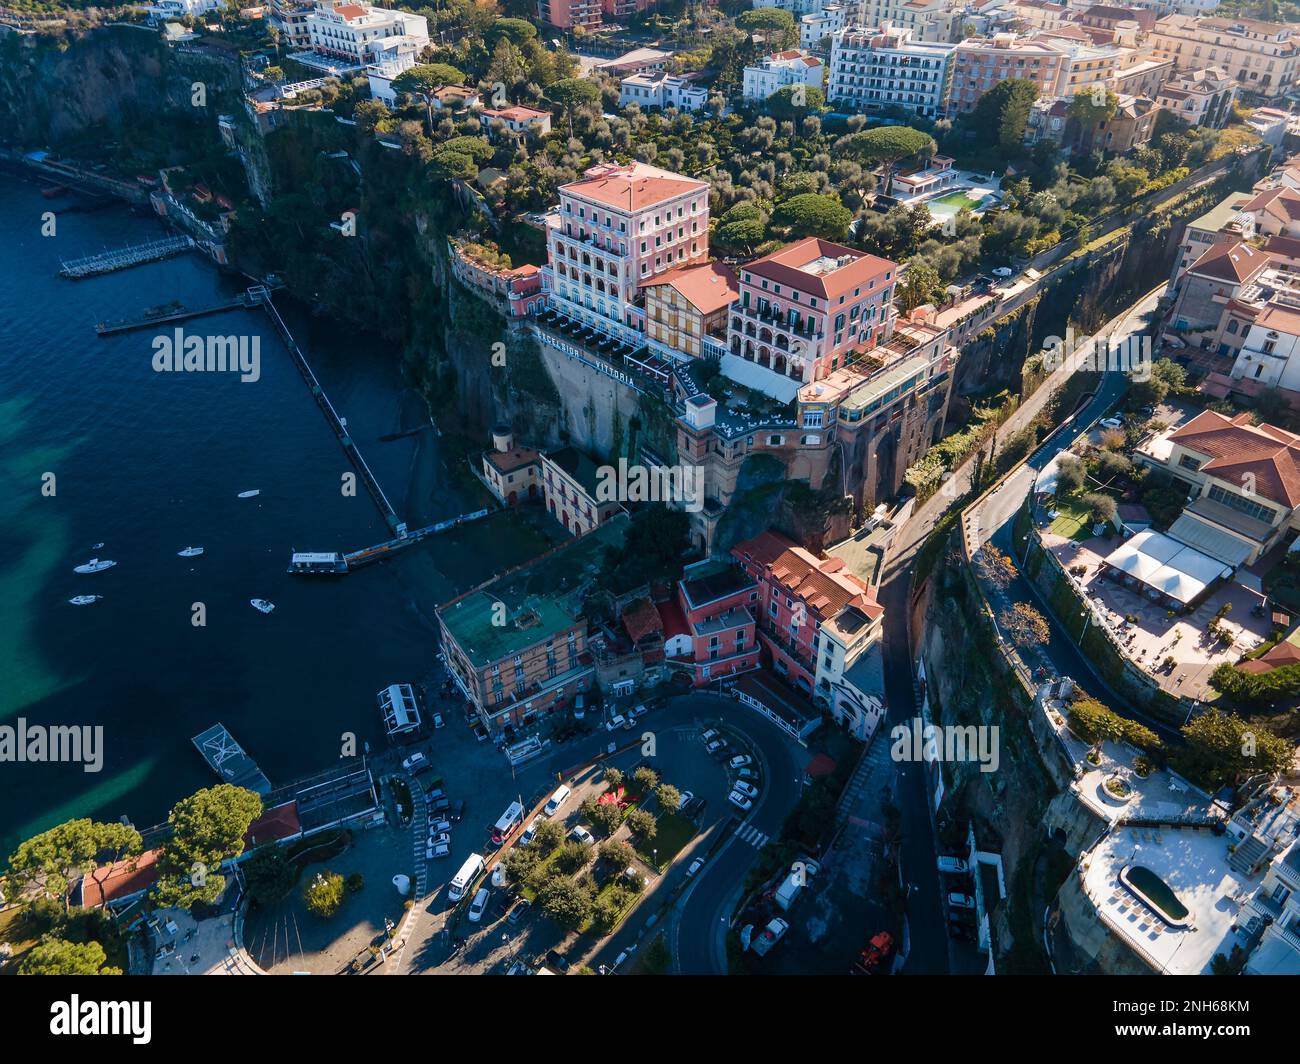 Vue aérienne de la ville côtière de Sorrente dans le sud-ouest de l'Italie et la côte étonnante de la baie de Naples sur la péninsule de Sorrentine au lever du soleil Banque D'Images